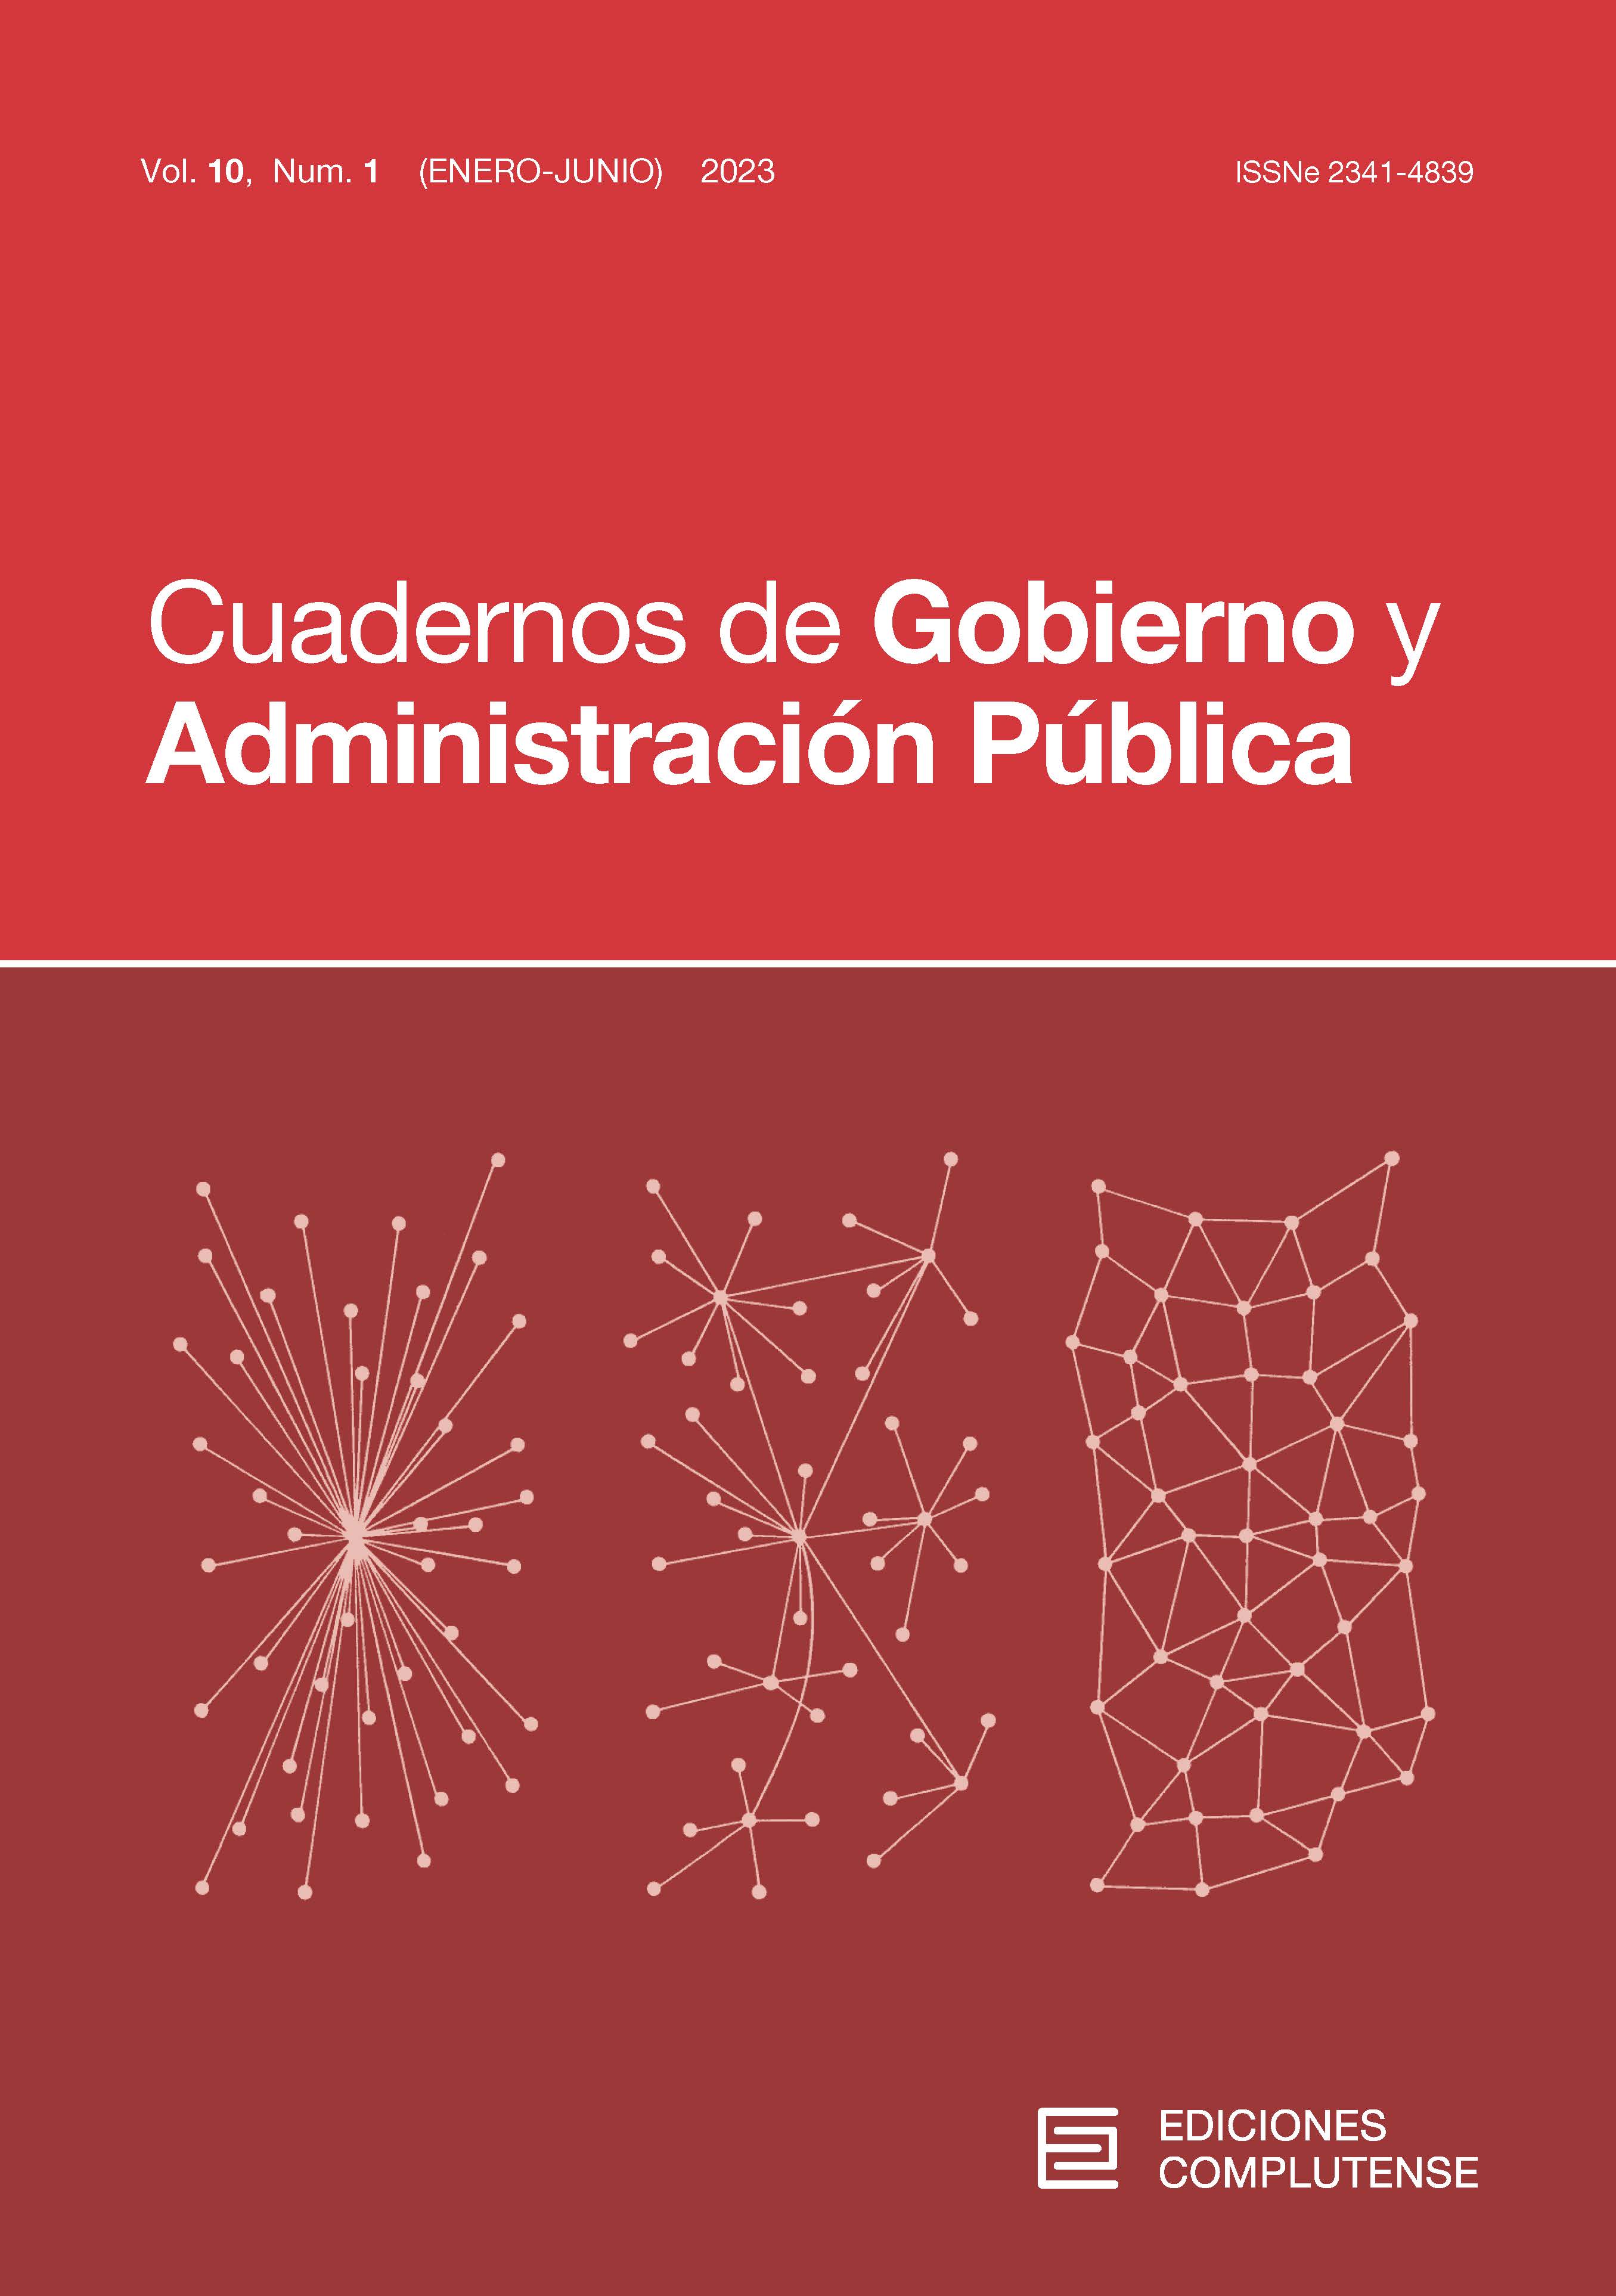 Cubierta Cuadernos de Gobiernos y Administración Pública 10 (1) 2023